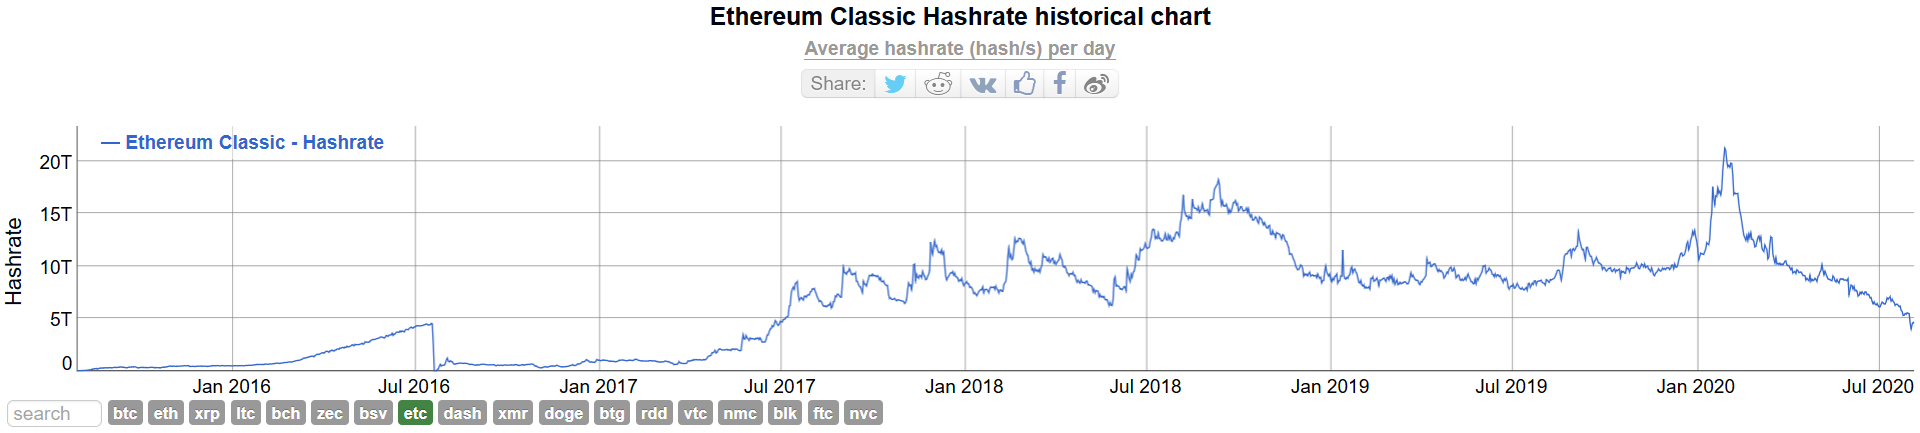 Ethereum Classic hash rate